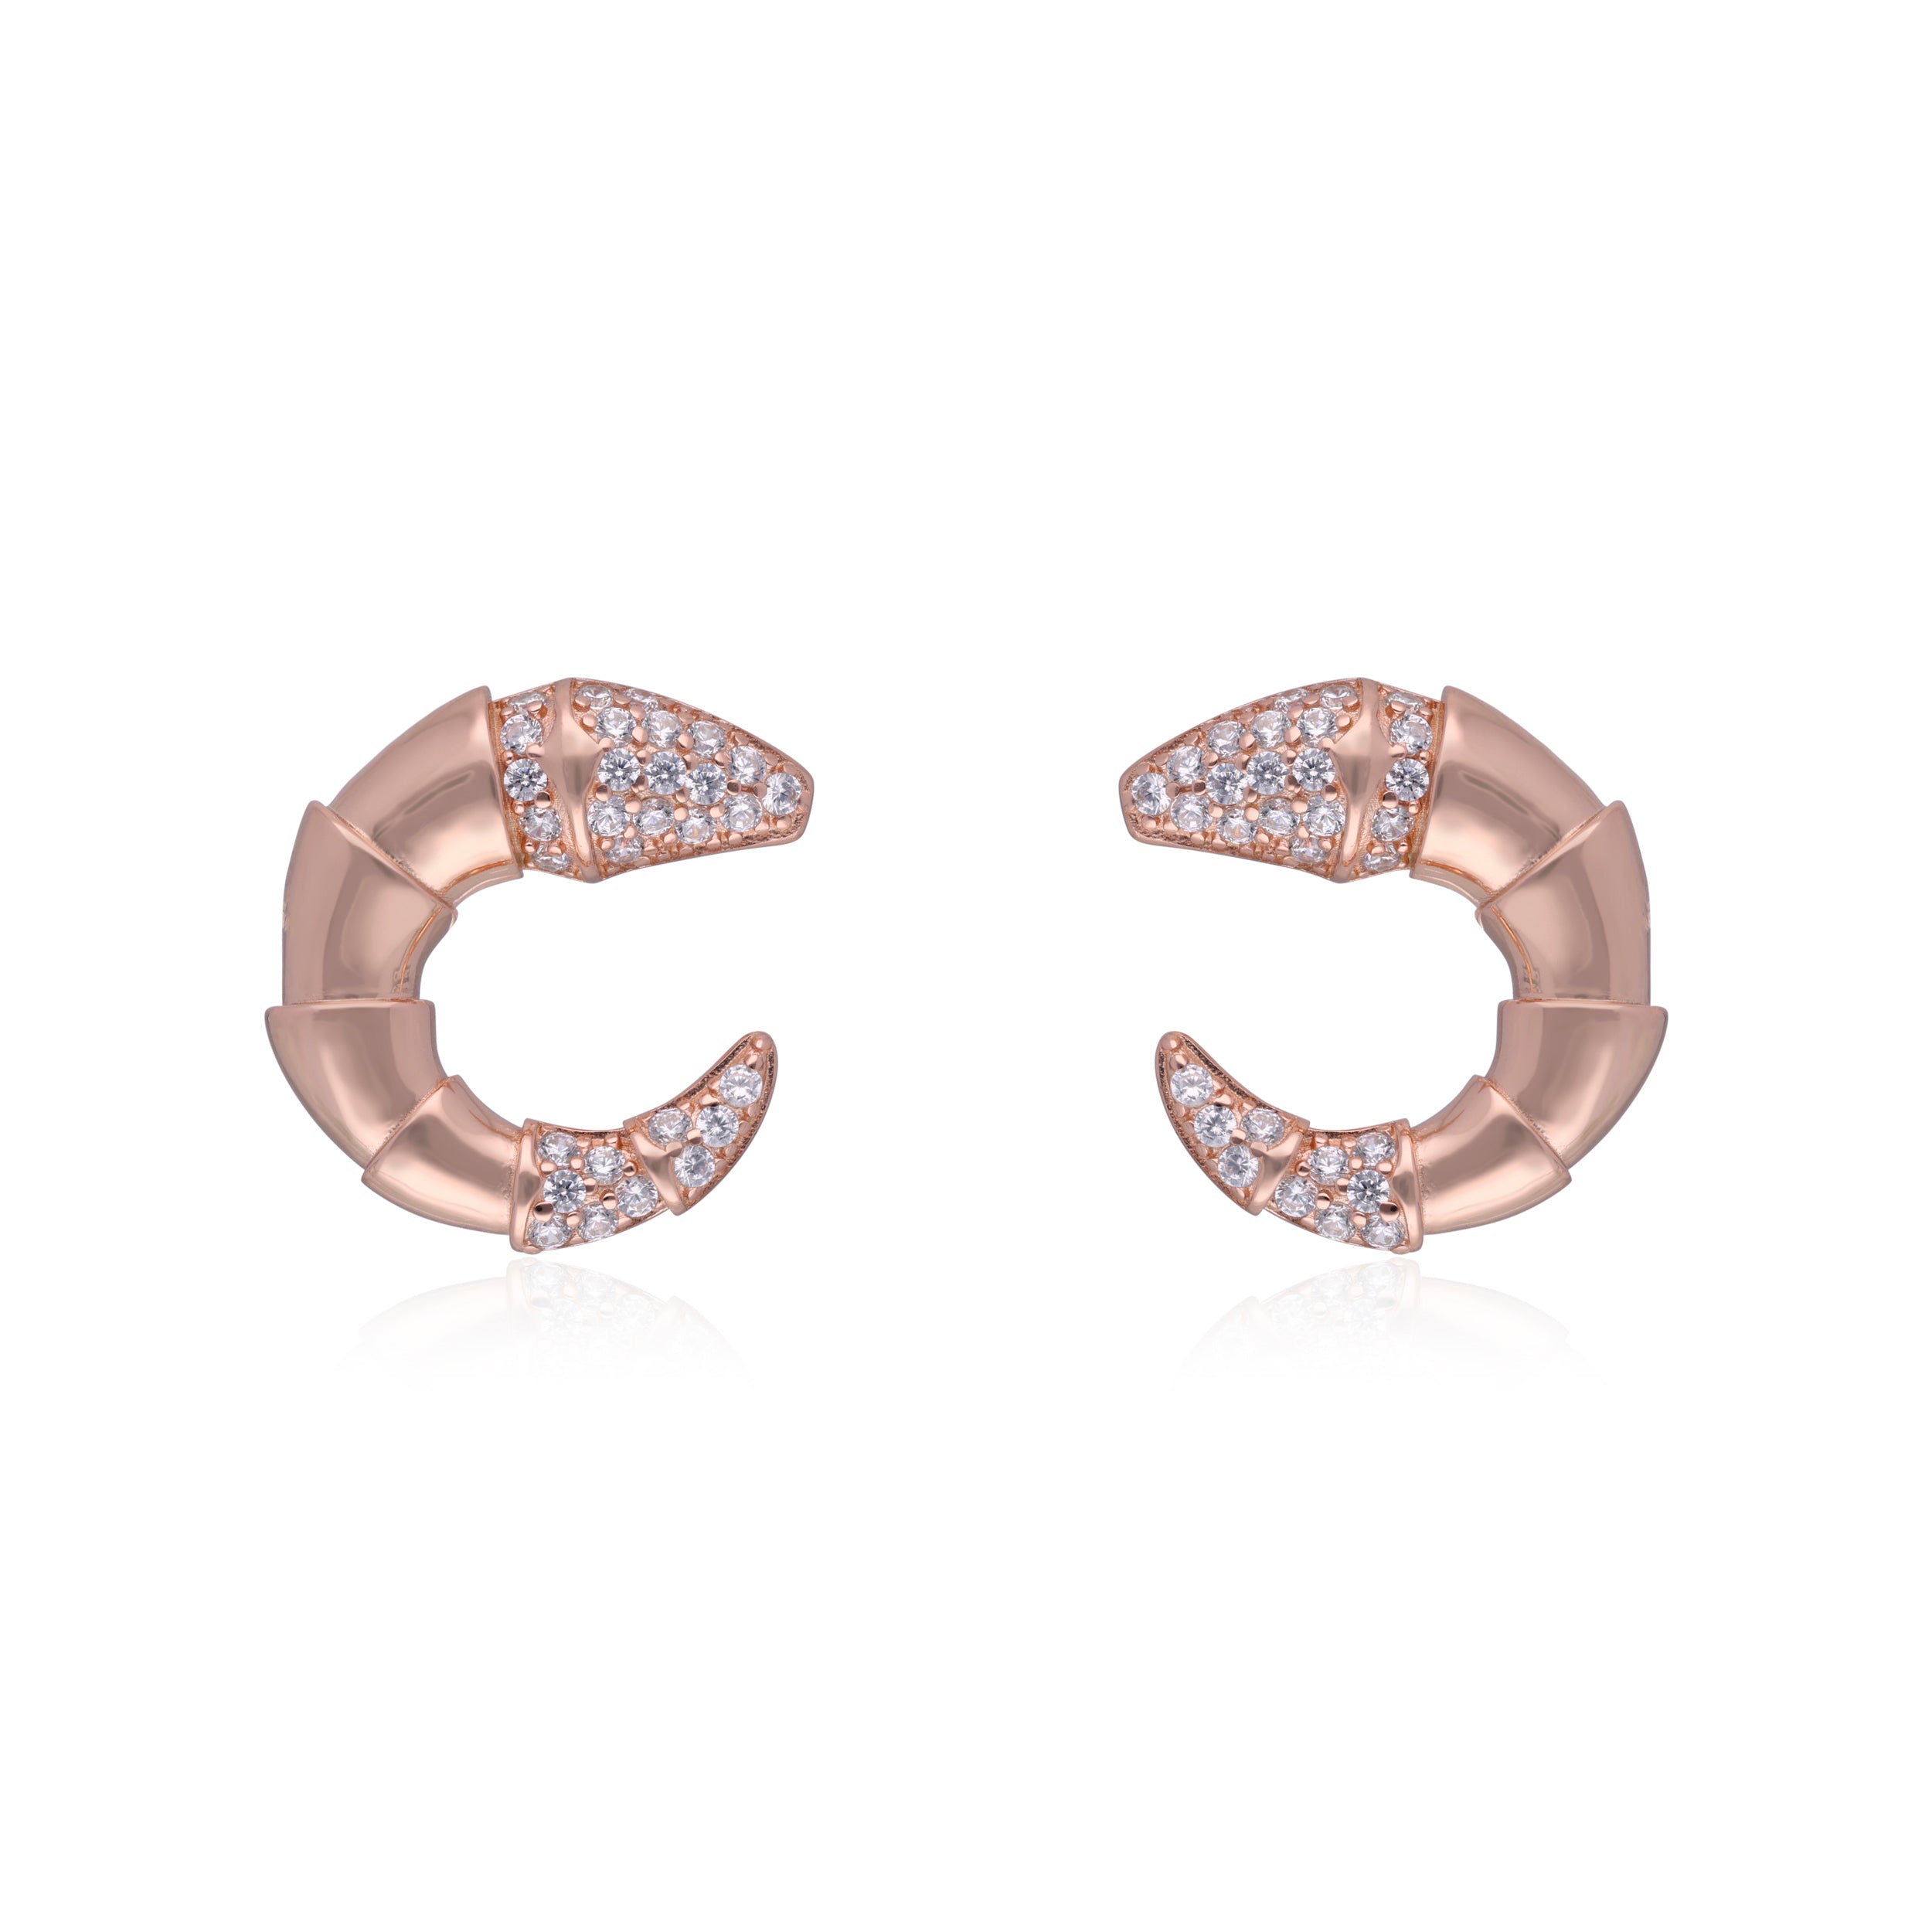 Elegant Serpentine Hoop Earrings with Pave Diamond Accents | SKU : 0003112045, 0003112205, 0003112120, 0003112069